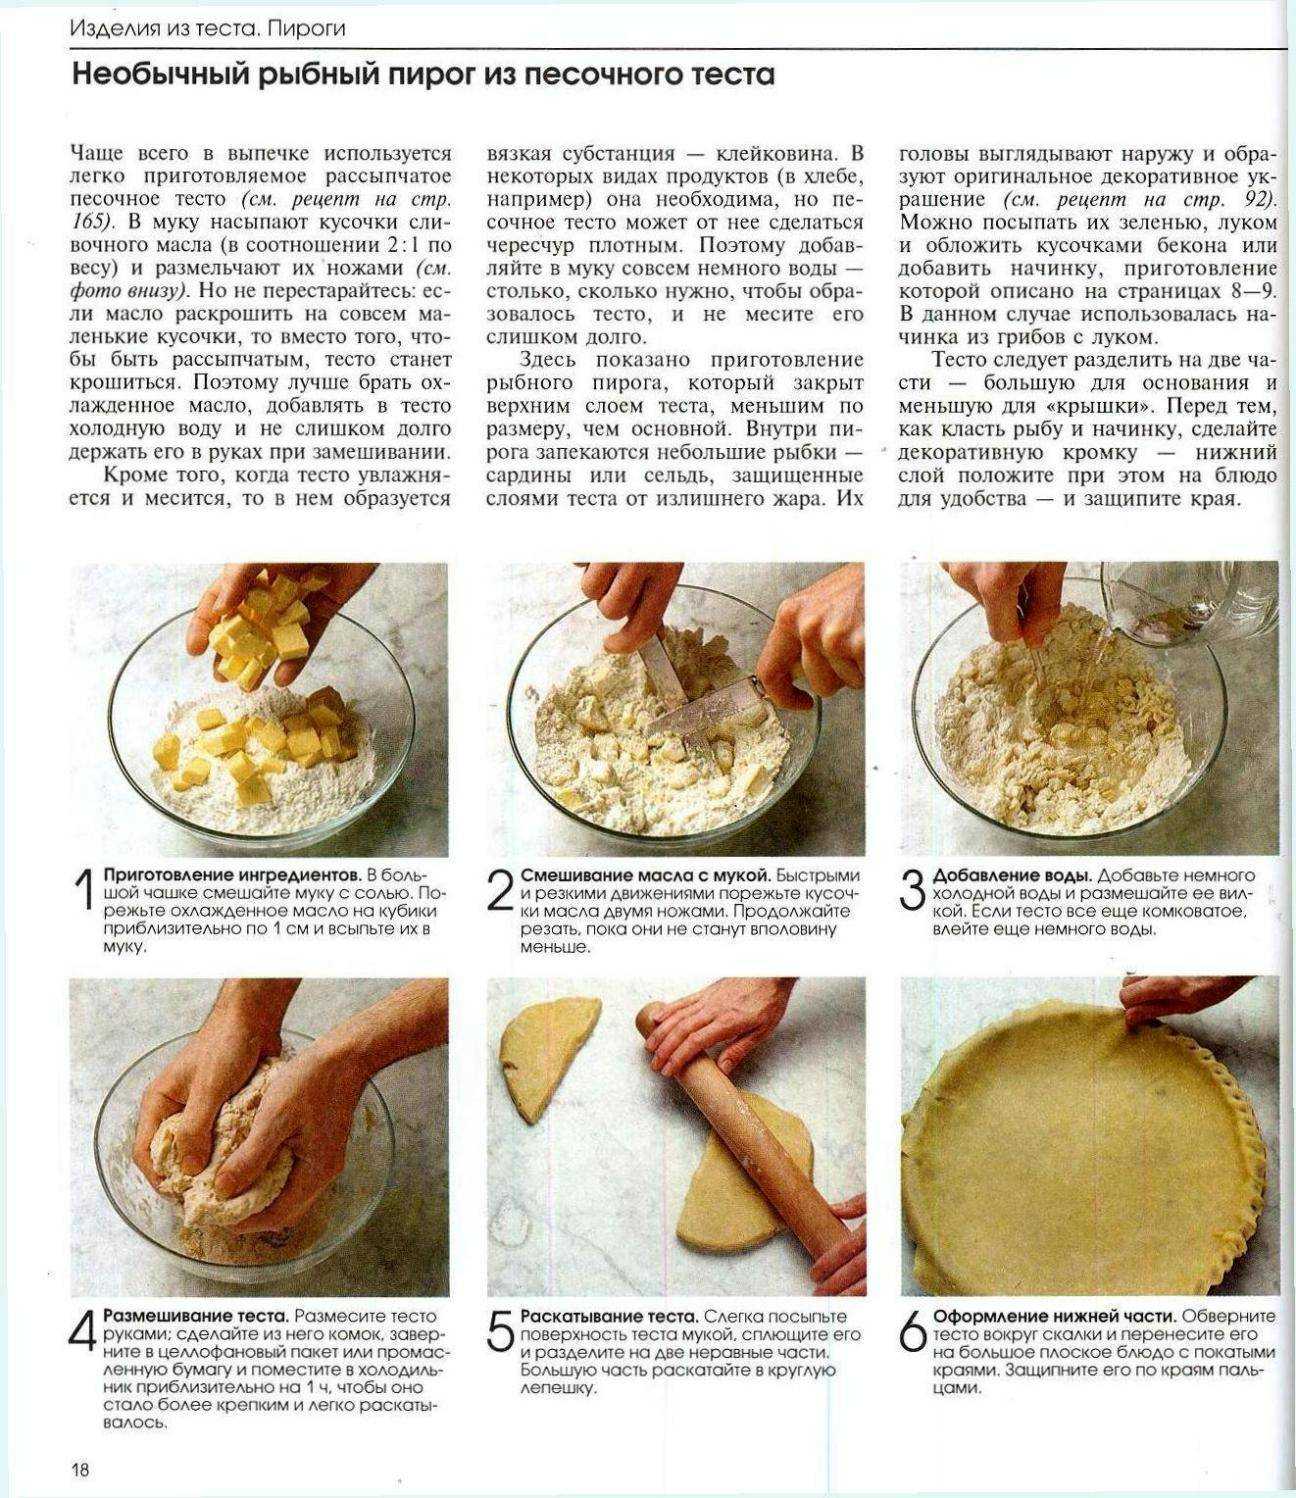 Песочное тесто | рецепты с пошаговыми фото бризе, сабле, сюкре | секреты приготовления песочного теста | волшебная eда.ру